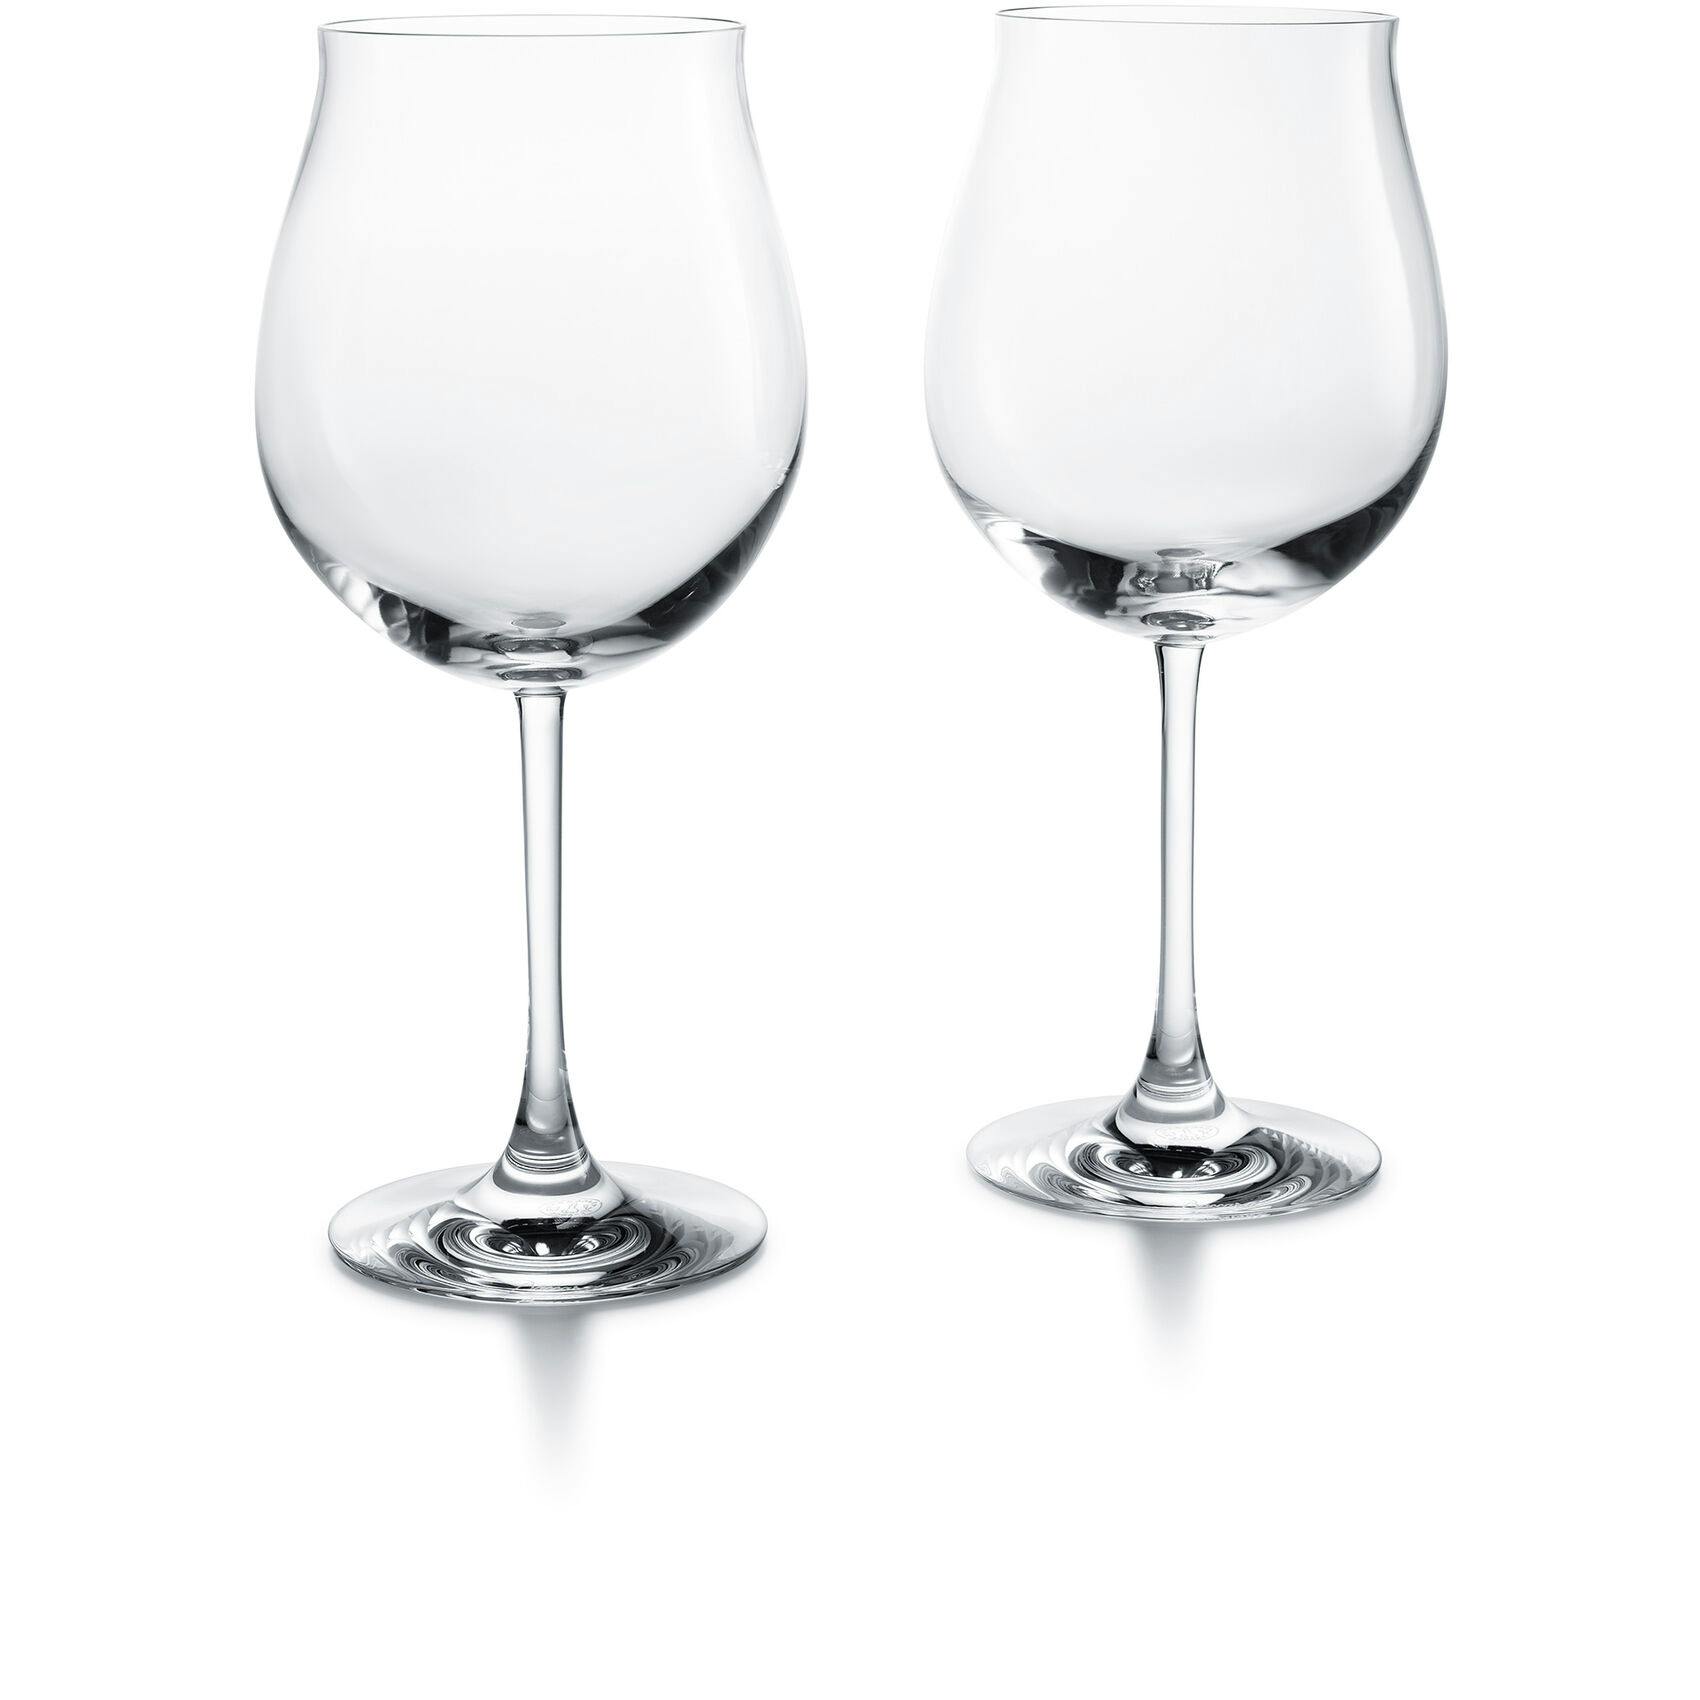 Baccarat Degustation Grand Bourgogne Tasting Glass, pair 0